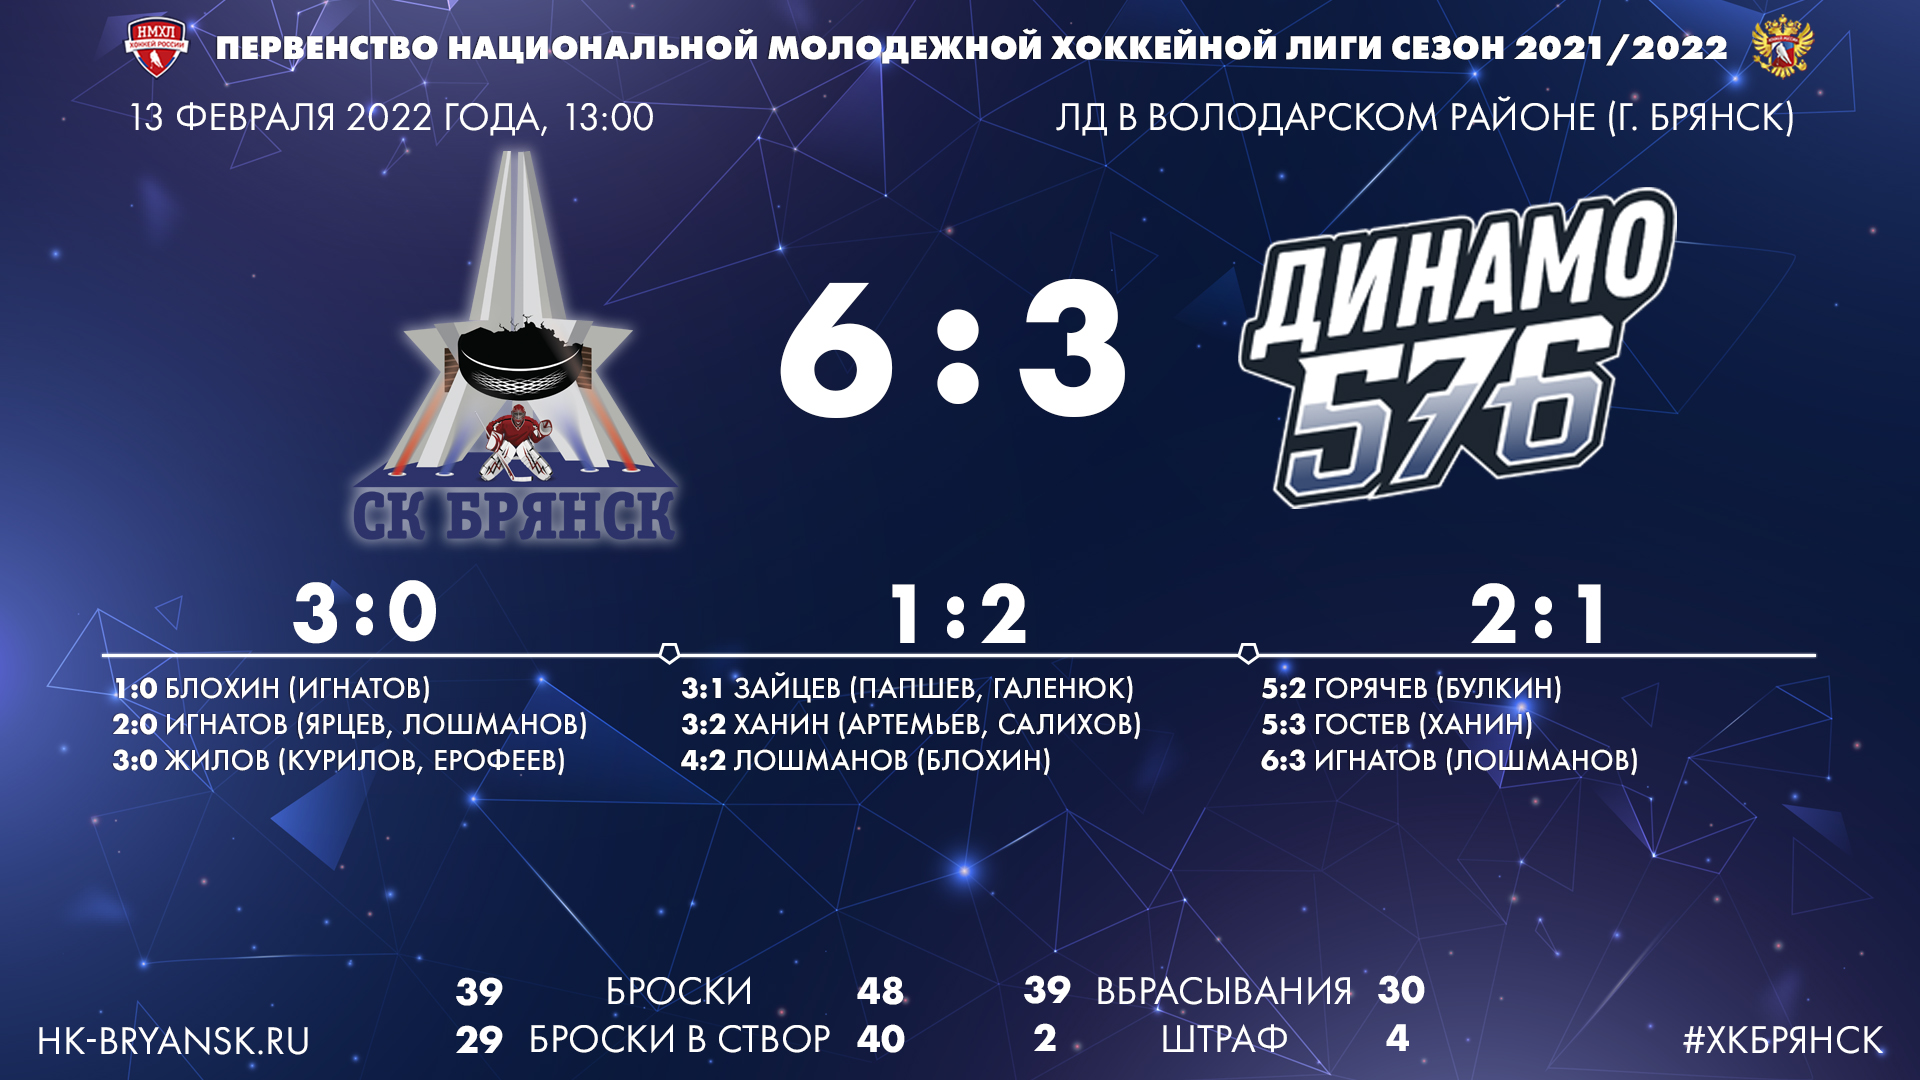 Победная серия достигла пяти матчей. ХК «Брянск» обыгрывает «Динамо-576»